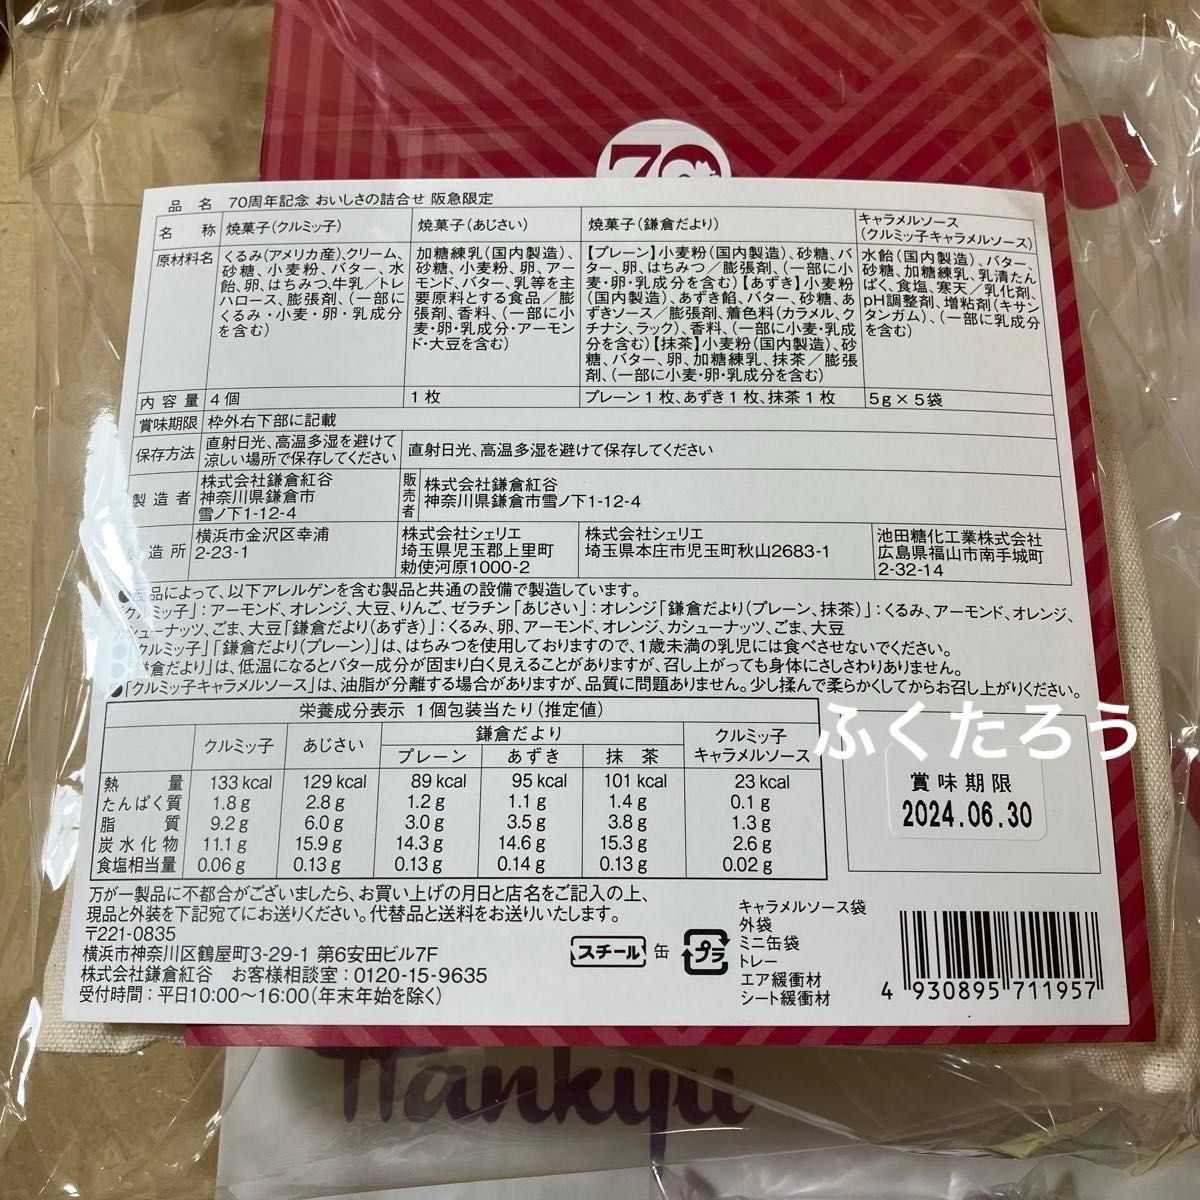 鎌倉紅谷 クルミッ子 百貨店 限定 ミニ缶 5種類 コンプリートセット 新品未開封